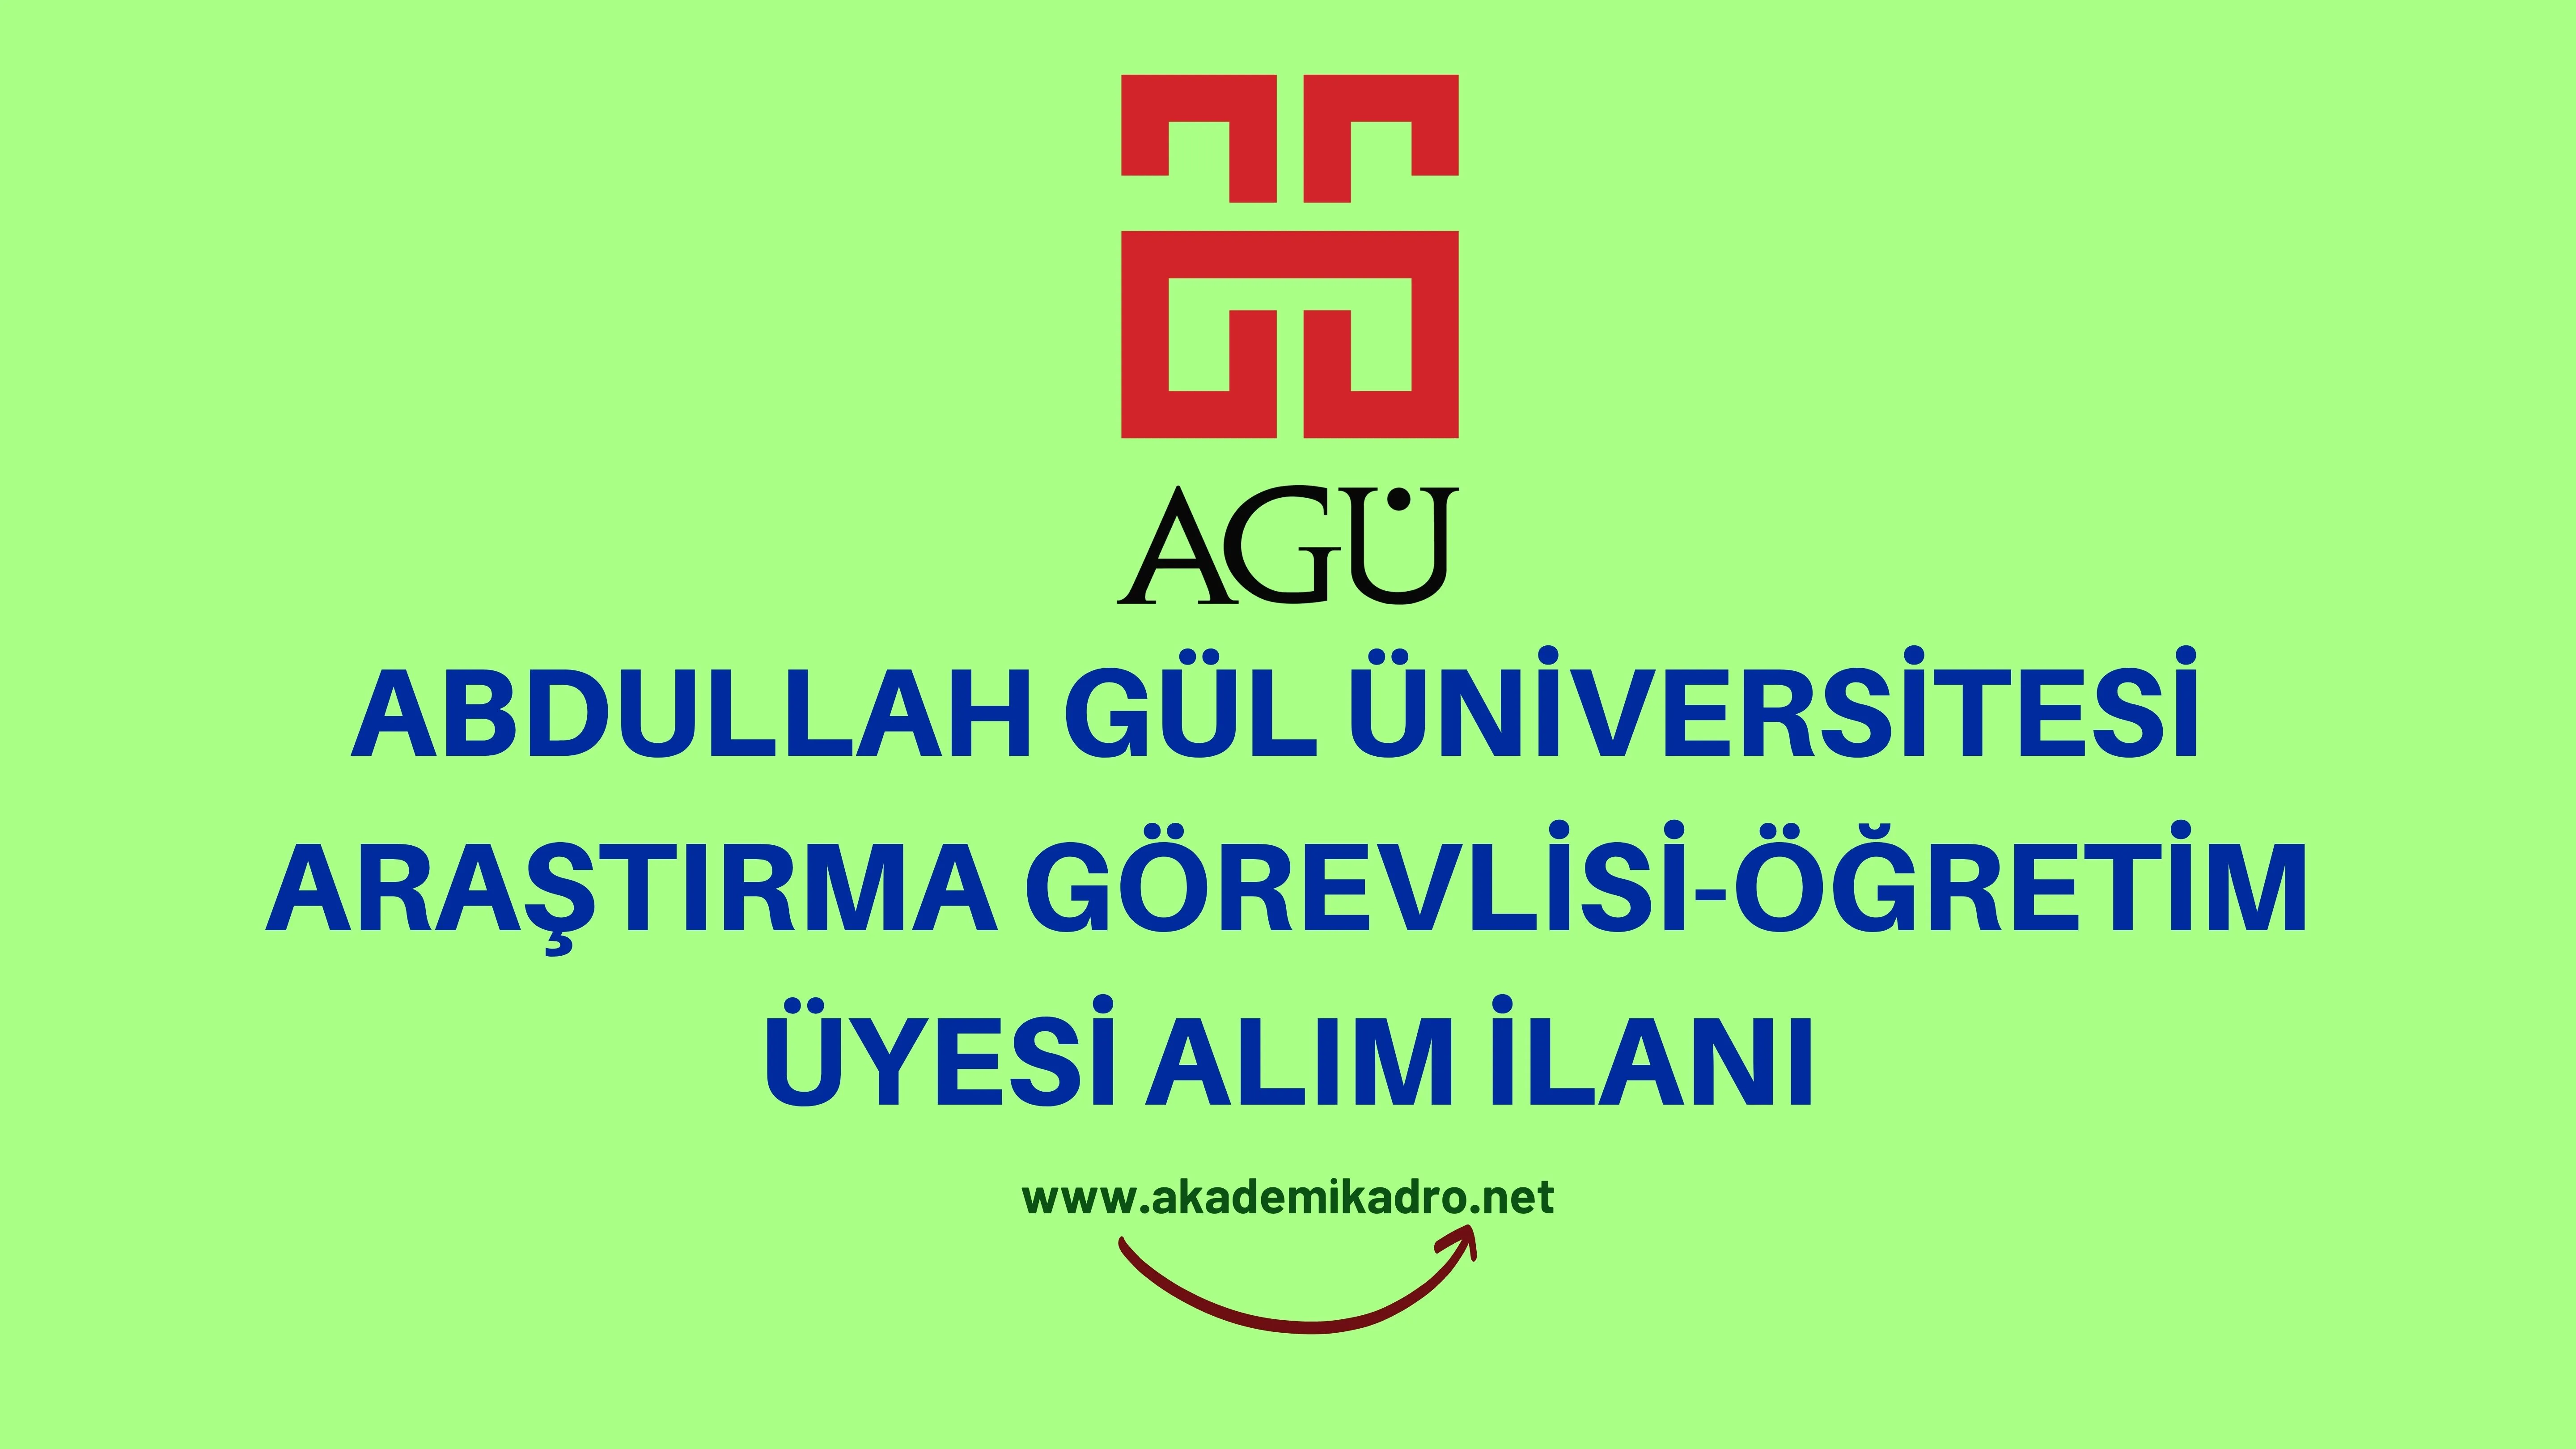 Abdullah Gül Üniversitesi 2 Araştırma görevlisi ve 2 öğretim üyesi alacak.